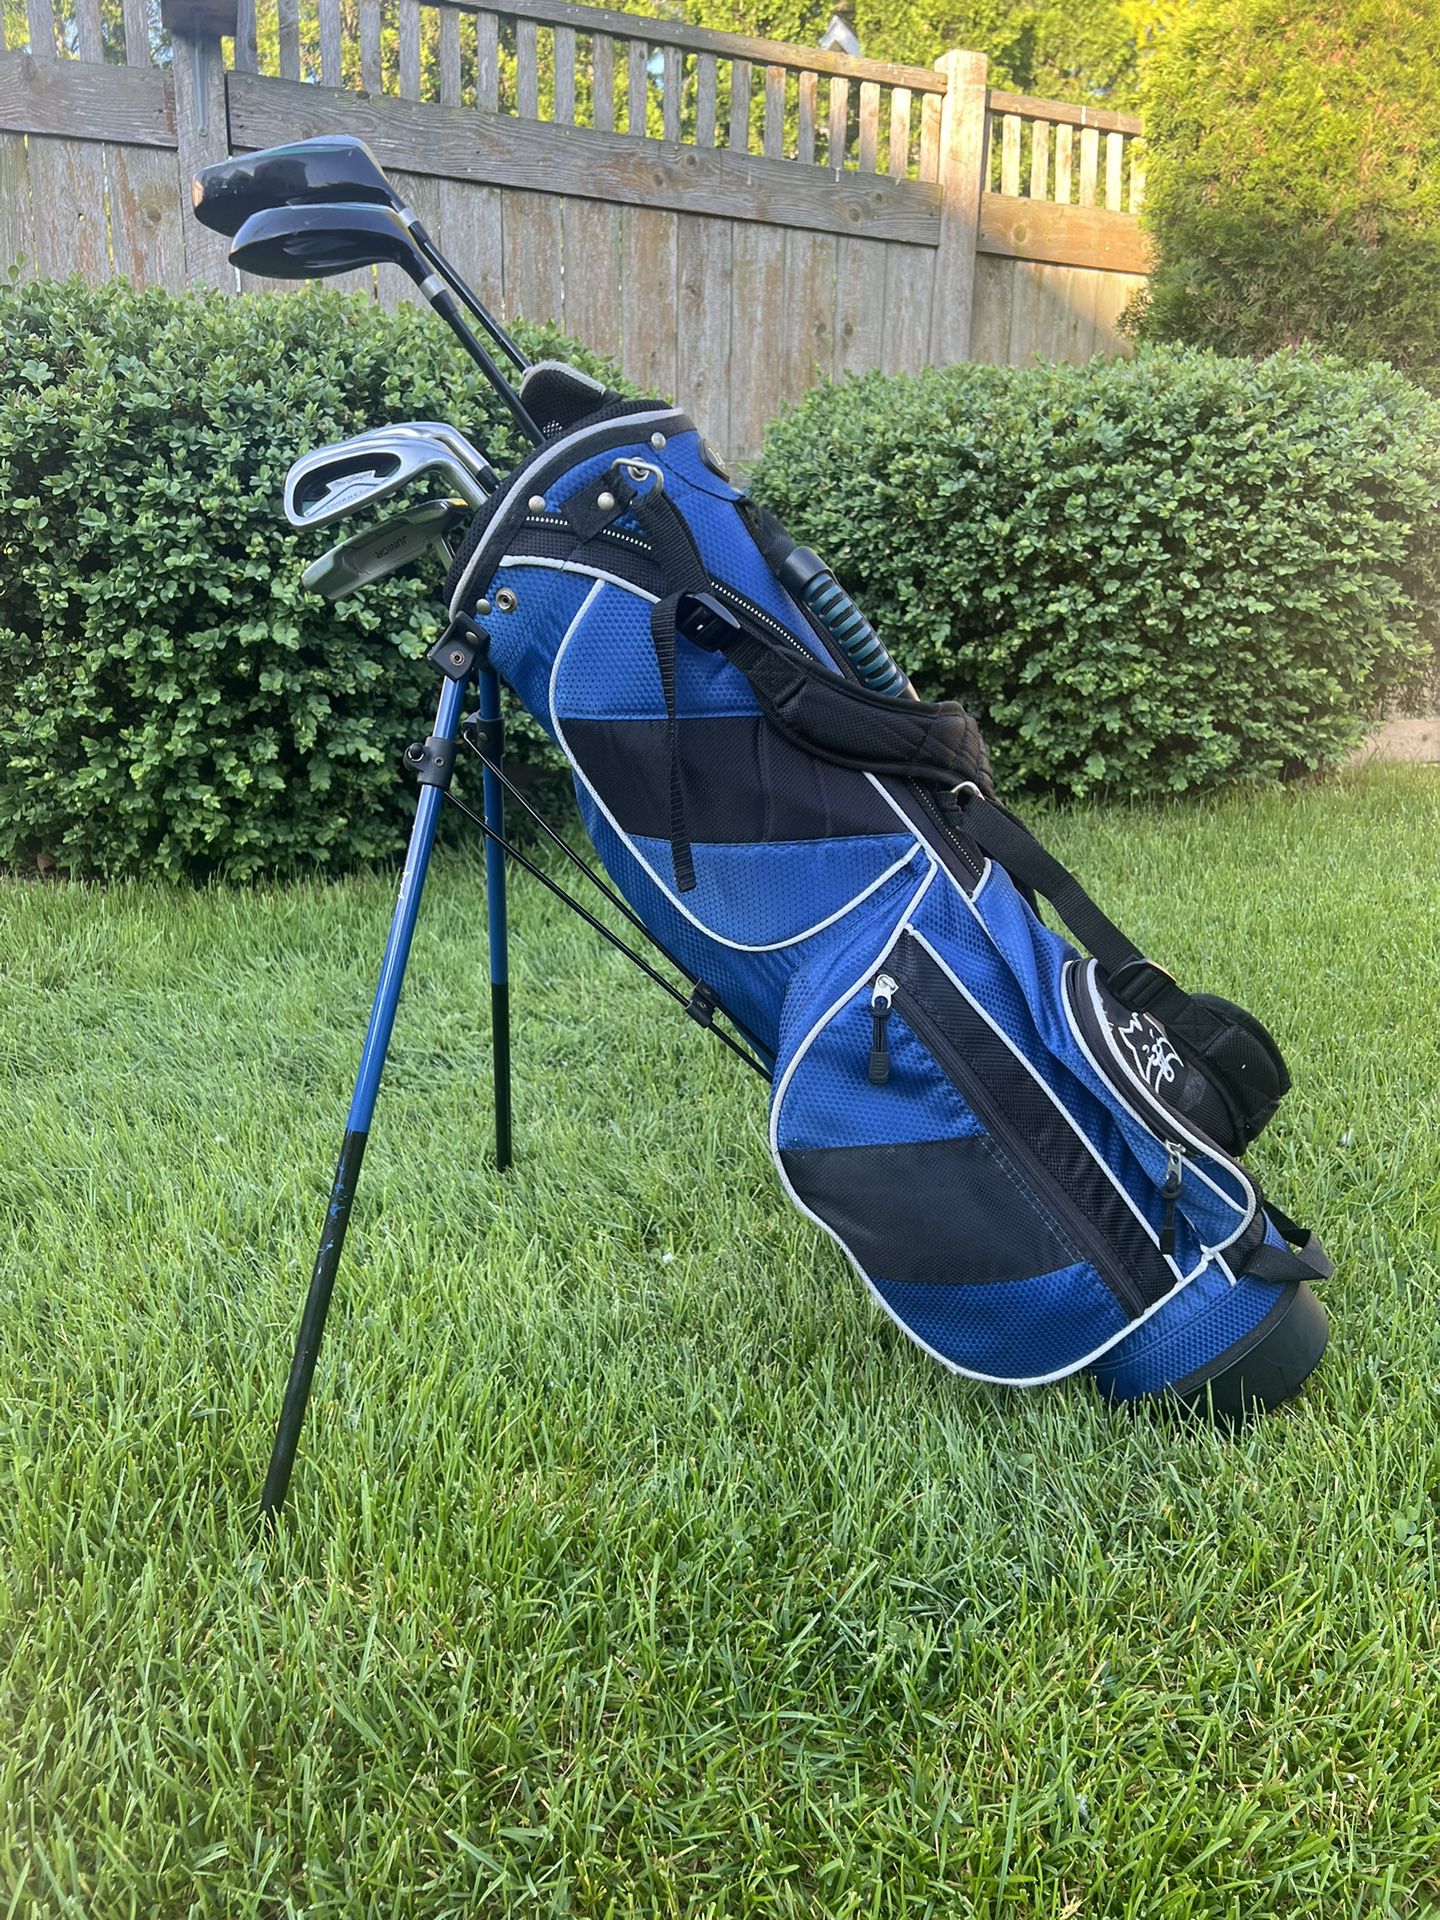 Youth RH golf club set with bag